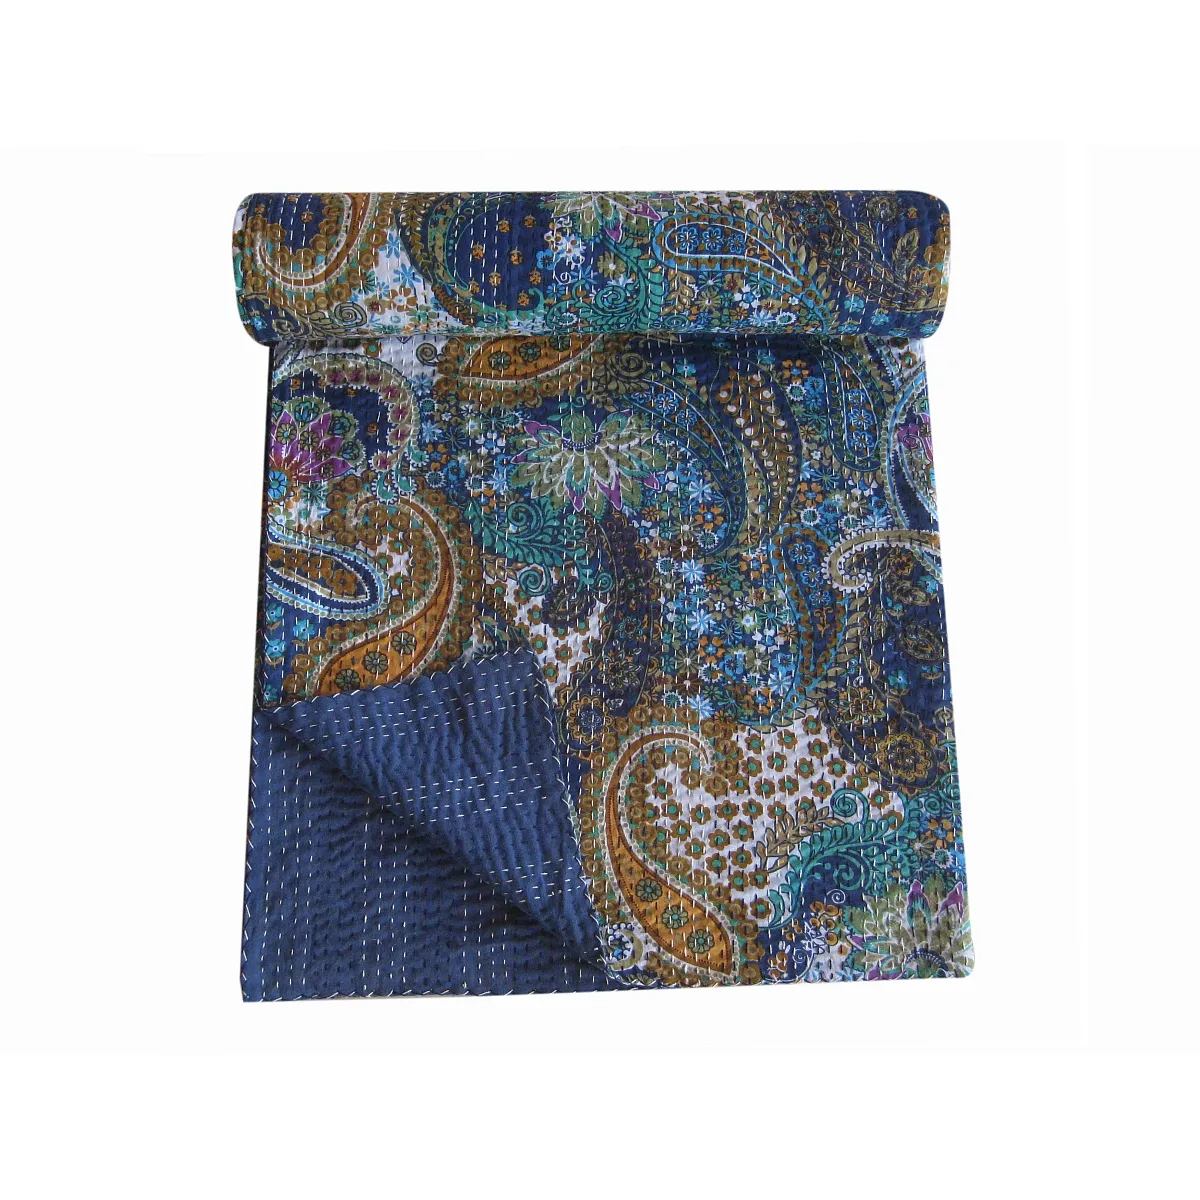 Ev dekoratif hint bohemian üretim son ömürlü koleksiyonu sari el dikiş kantha yorgan